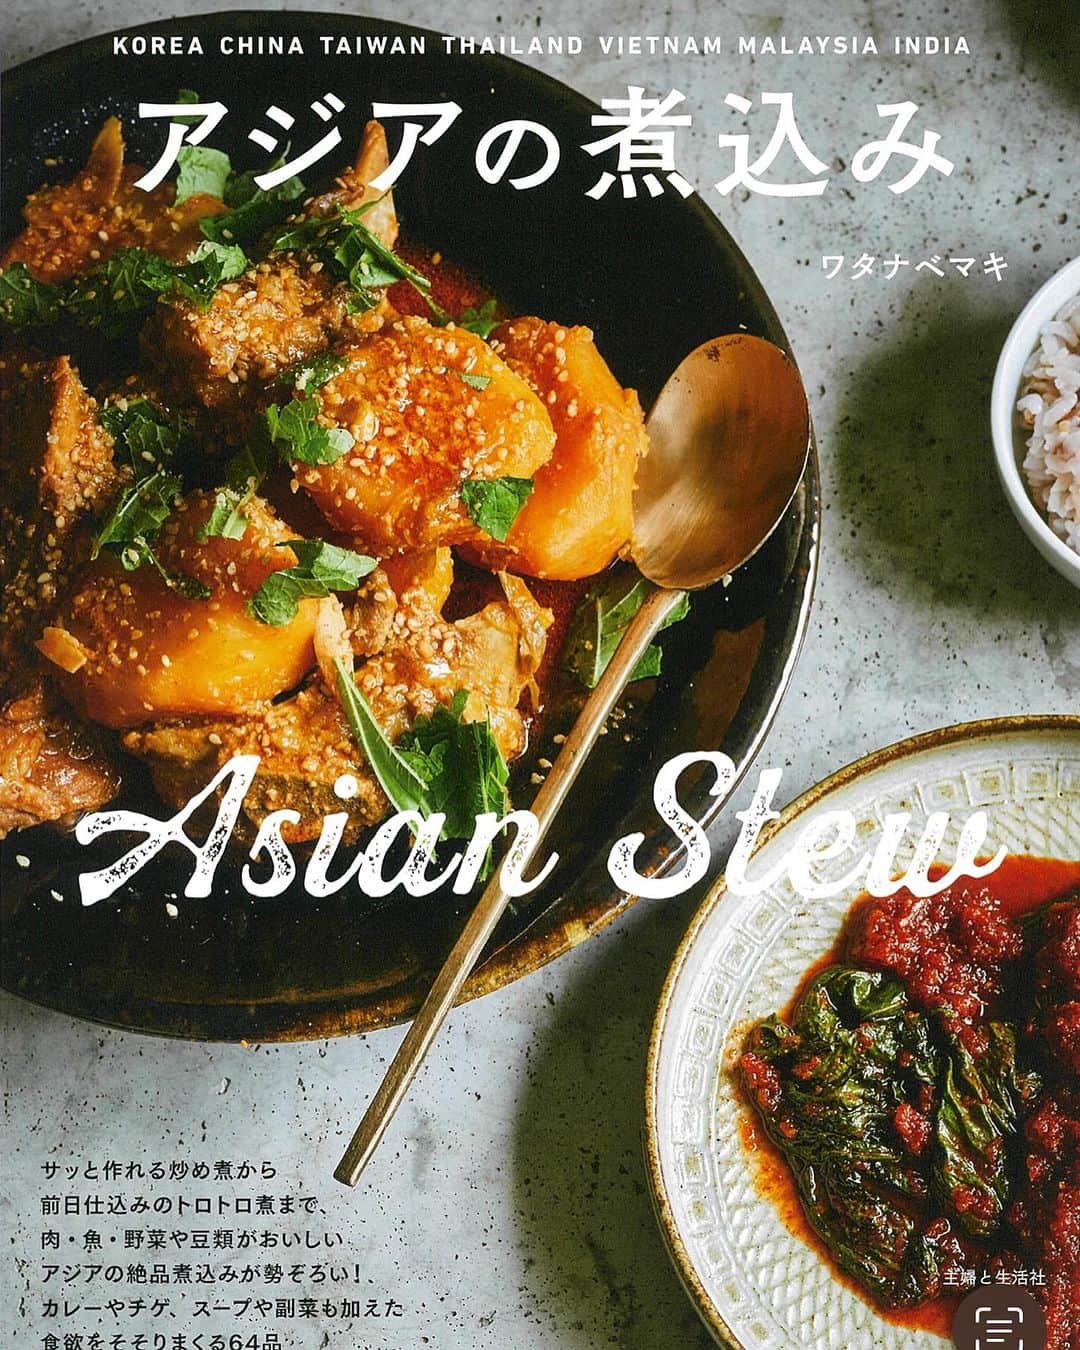 ワタナベマキのインスタグラム：「「アジアの煮込み」（主婦と生活社）来週17日発売です。 アジアシリーズの第四弾は「煮込み」。 煮込みはアジアシリーズの中では最も作りやすいのではないかな、と思っています。 アジアの煮込みで面白いのは、どの国も食材は同じでも作り方や味付けでその国らしい煮込みになるところ。 皆さんのお馴染みの煮込みから、目新しいアジアの国の煮込みまで、楽しみアジアの煮込み。 ぜひ、作ってみてください。 Amazonでは予約が始まっていますので、プロフィールとストーリーにリンクを貼ってあります。」